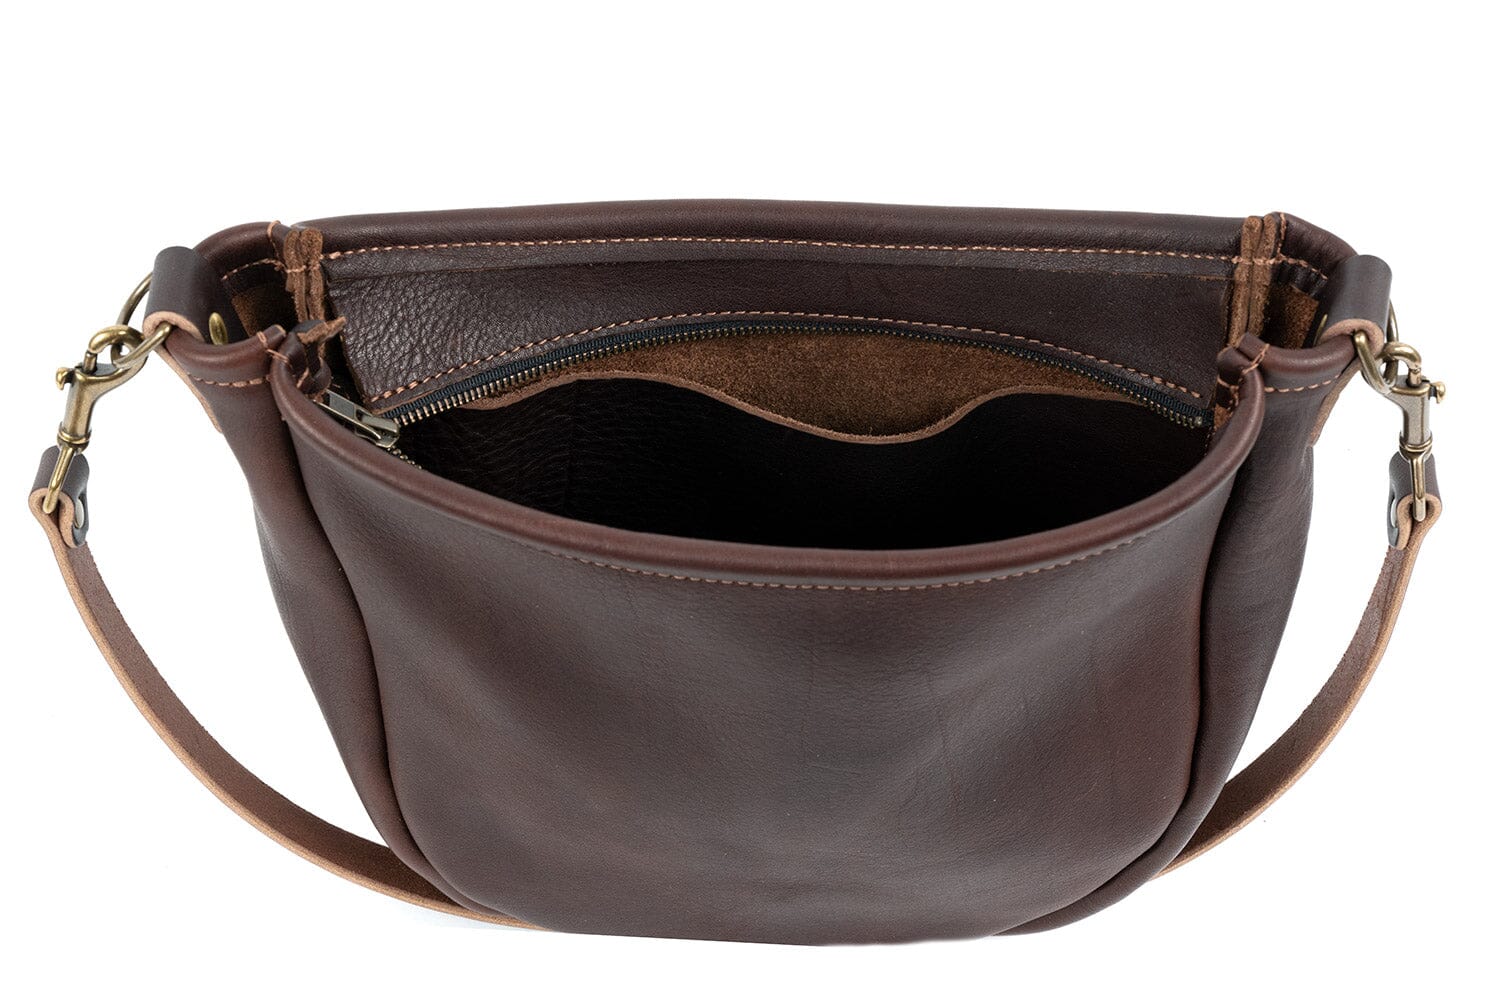 Celeste Leather Hobo Bag - Black Bison - Go Forth Goods ®